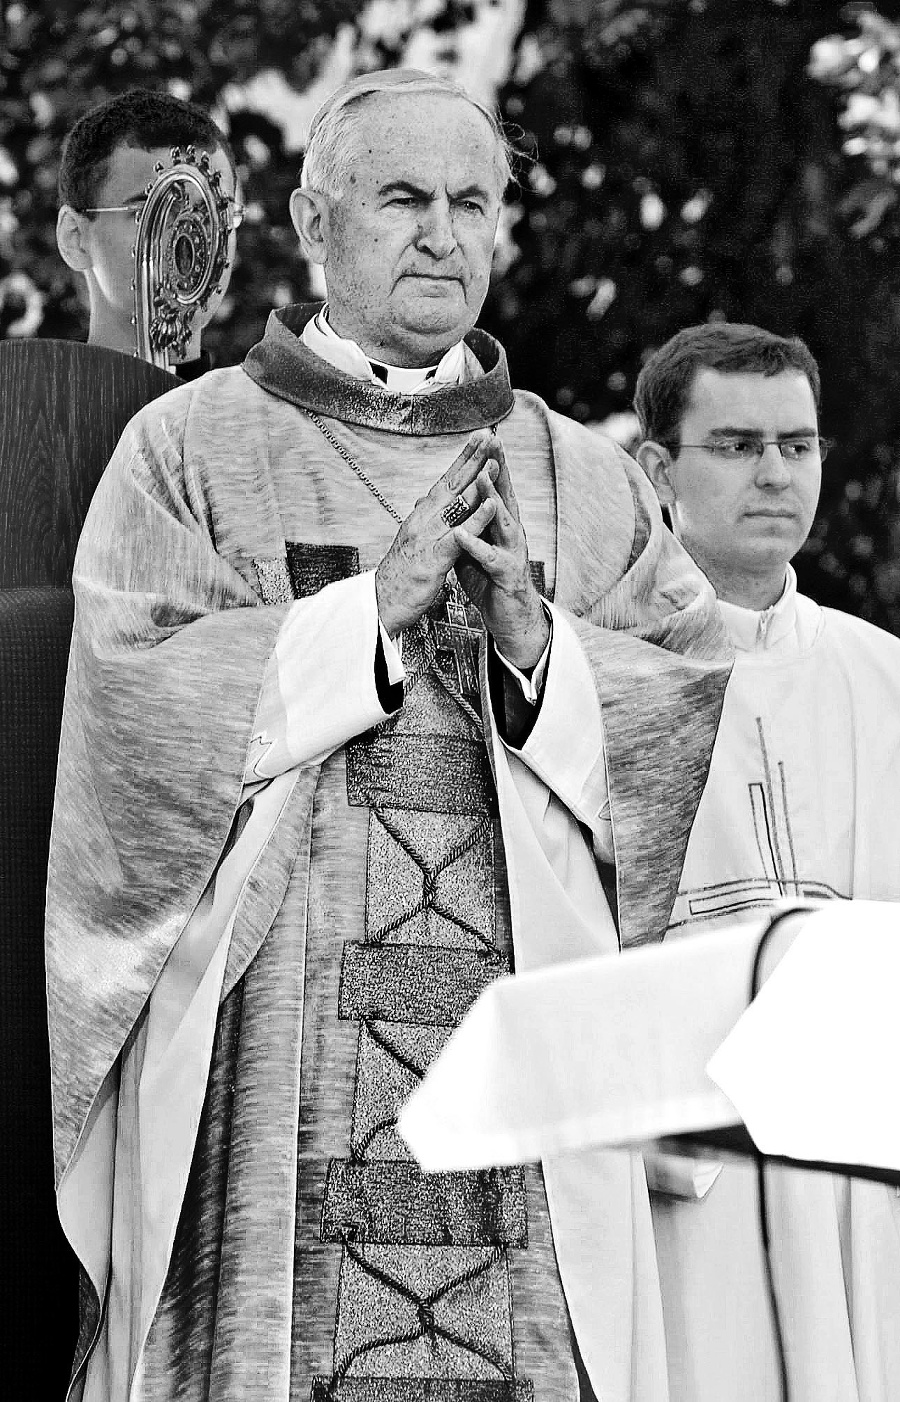 Kardinál Jozef Tomko (†